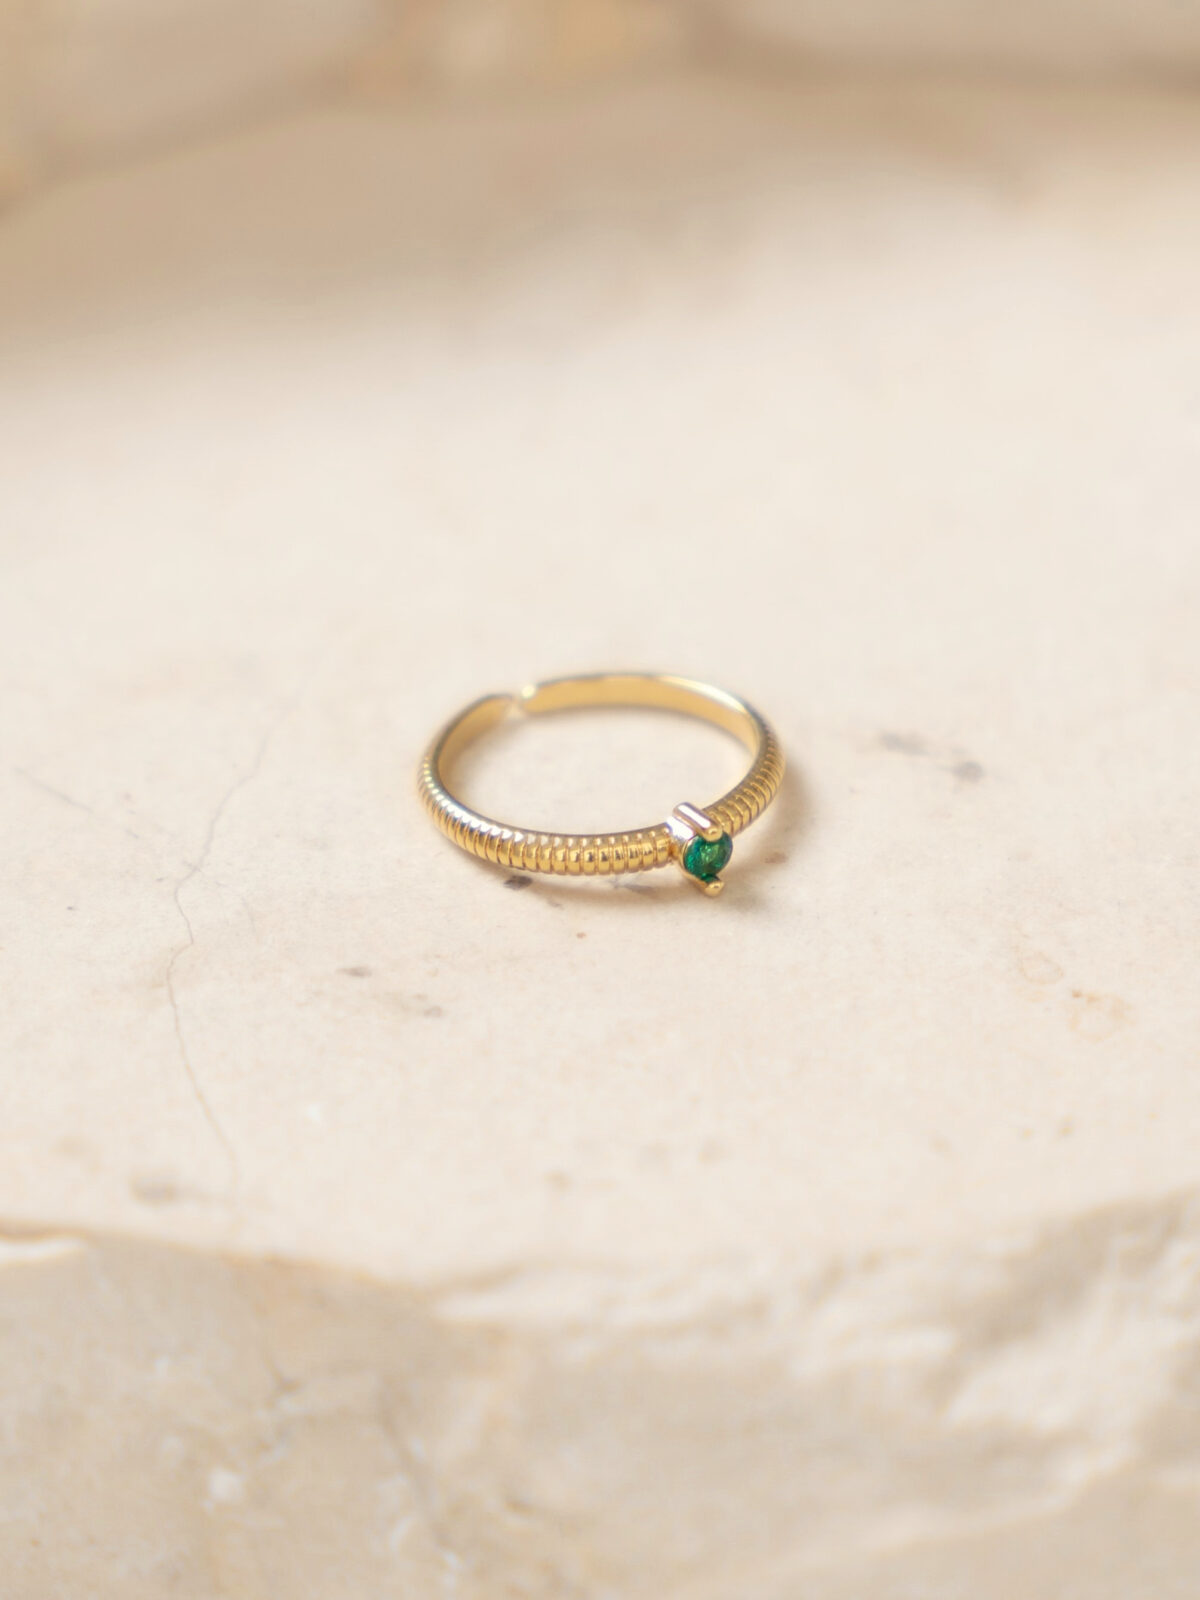 טבעת סוליטר, טבעת זהב סוליטר,טבעת אירוסין יהלום, טבעת אירוסים זולה, טבעת אירוסים זולה, טבעת זהב עם זרקון, טבעת זהב עם שיבוץ, טבעת זהב משובצת,